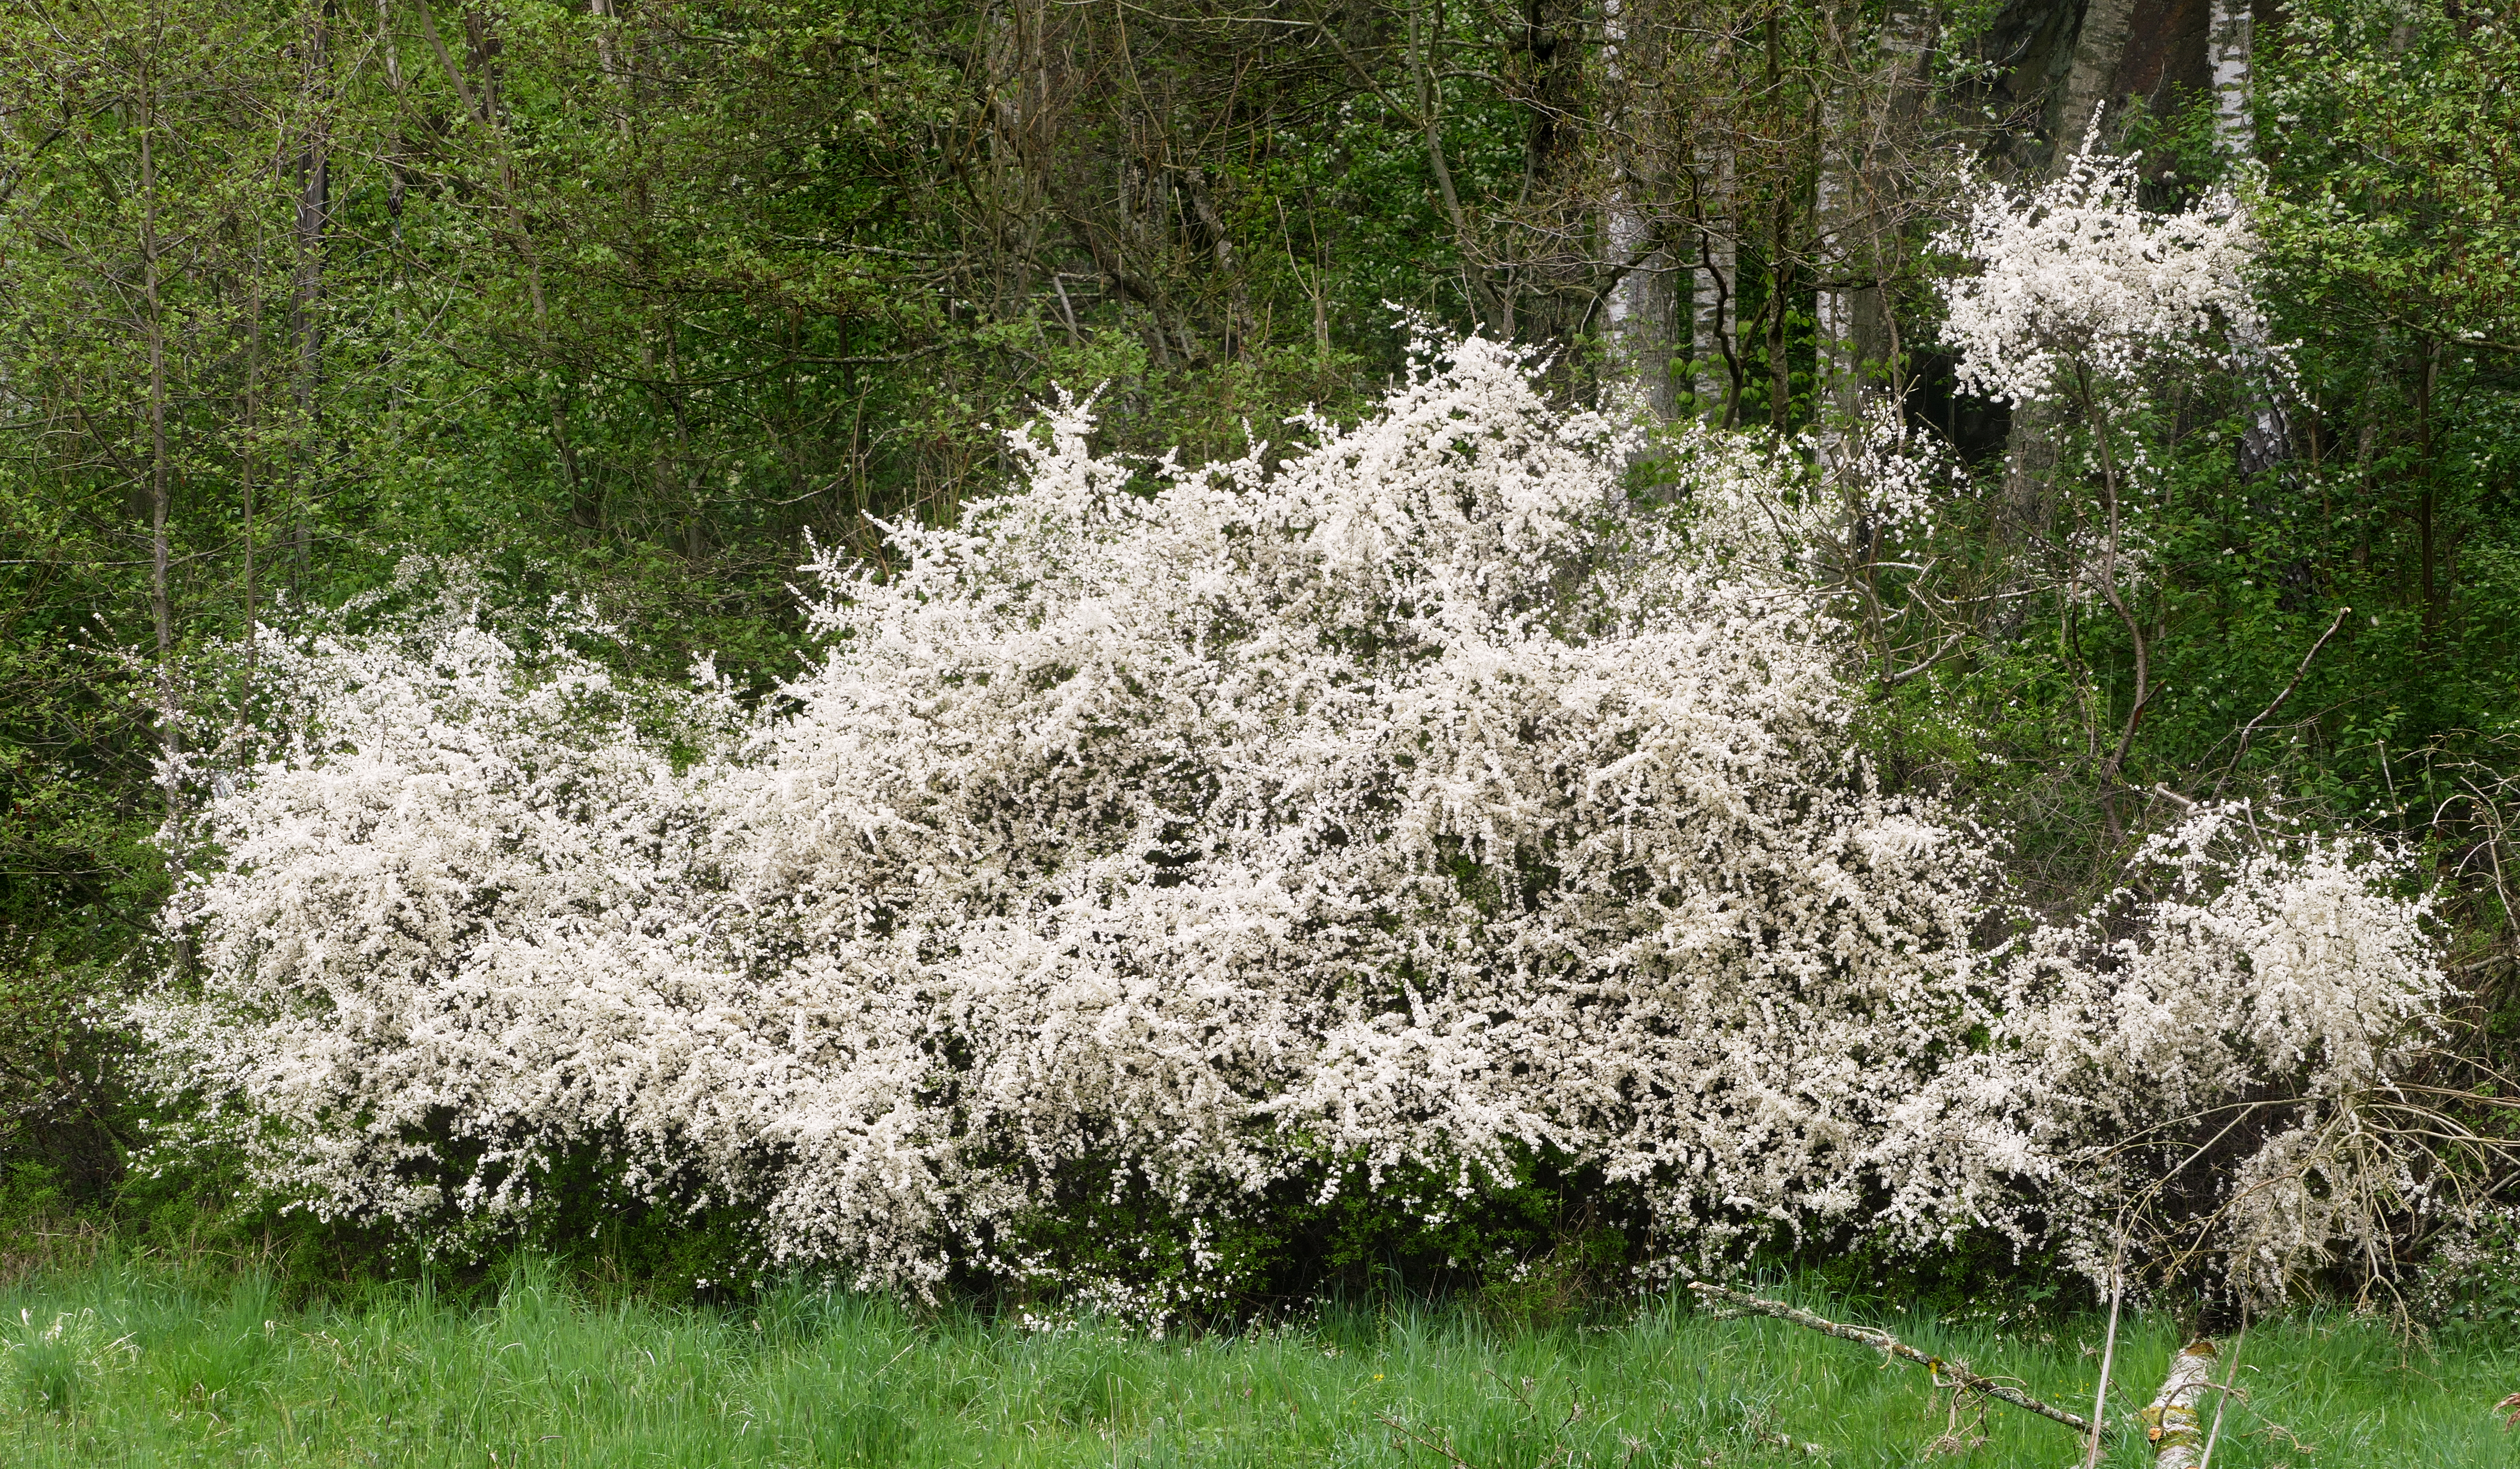 Blackthorn bushes at Holma 2